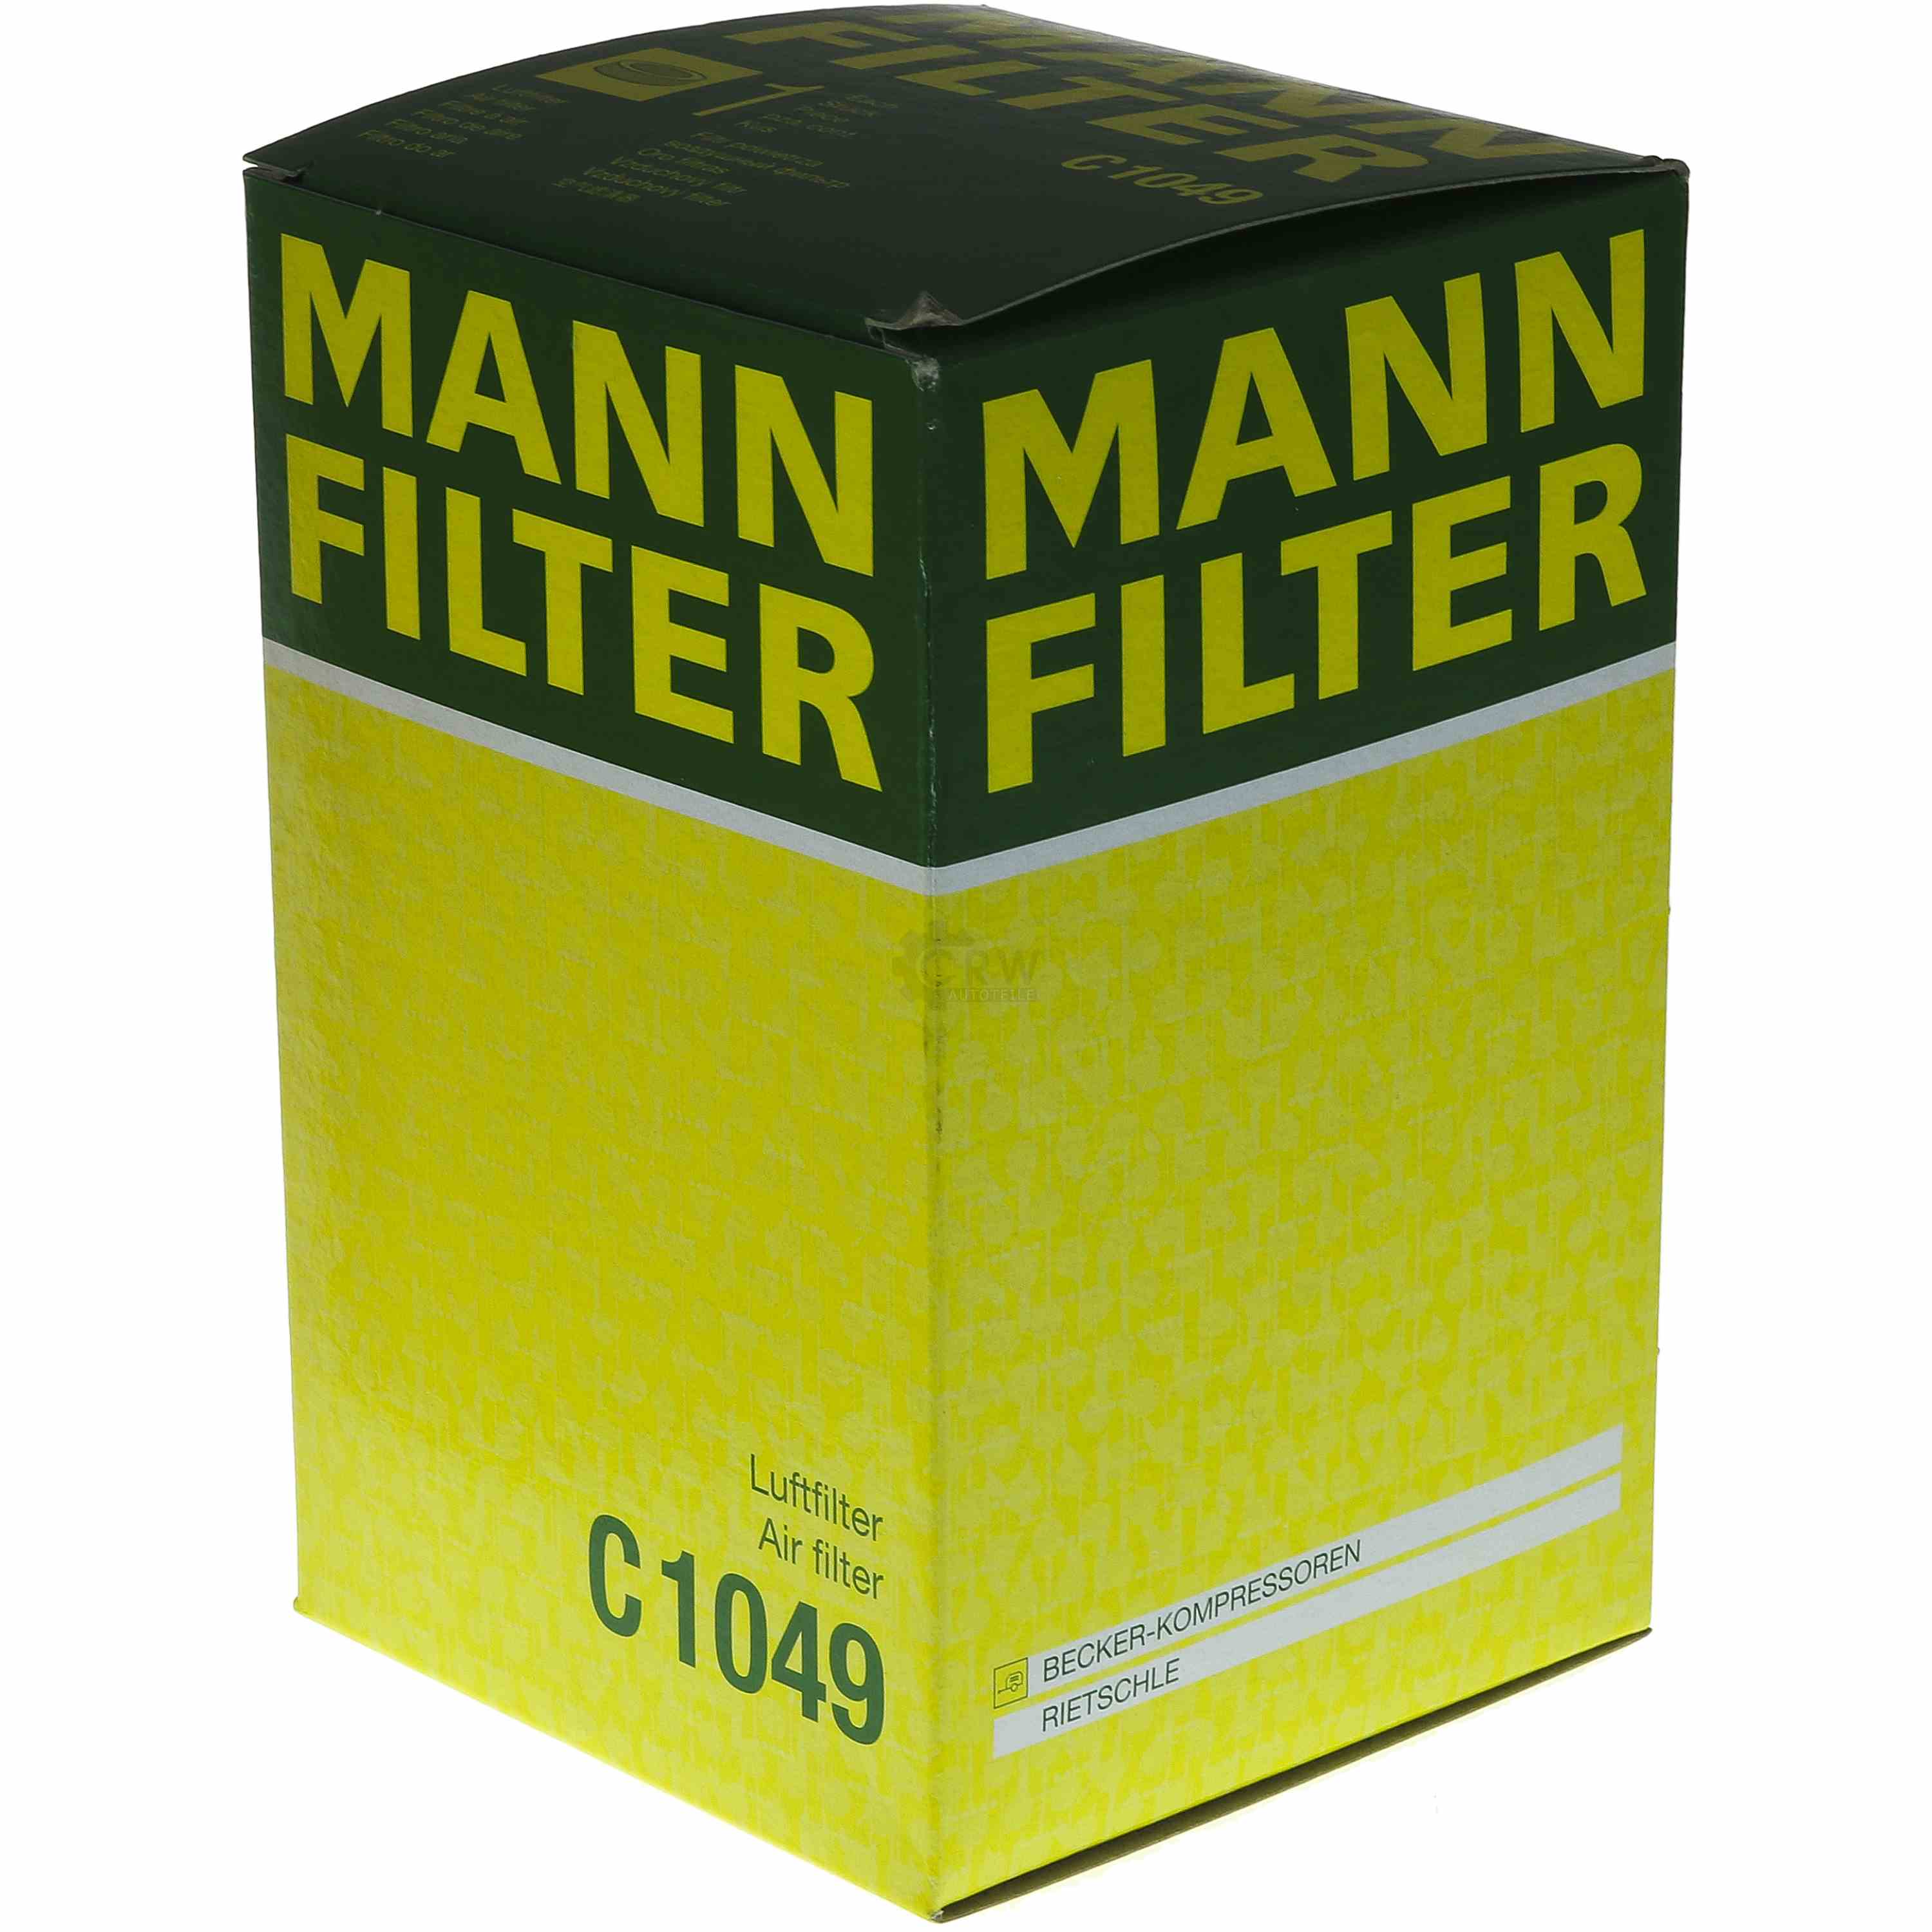 MANN-FILTER Luftfilter C 1049